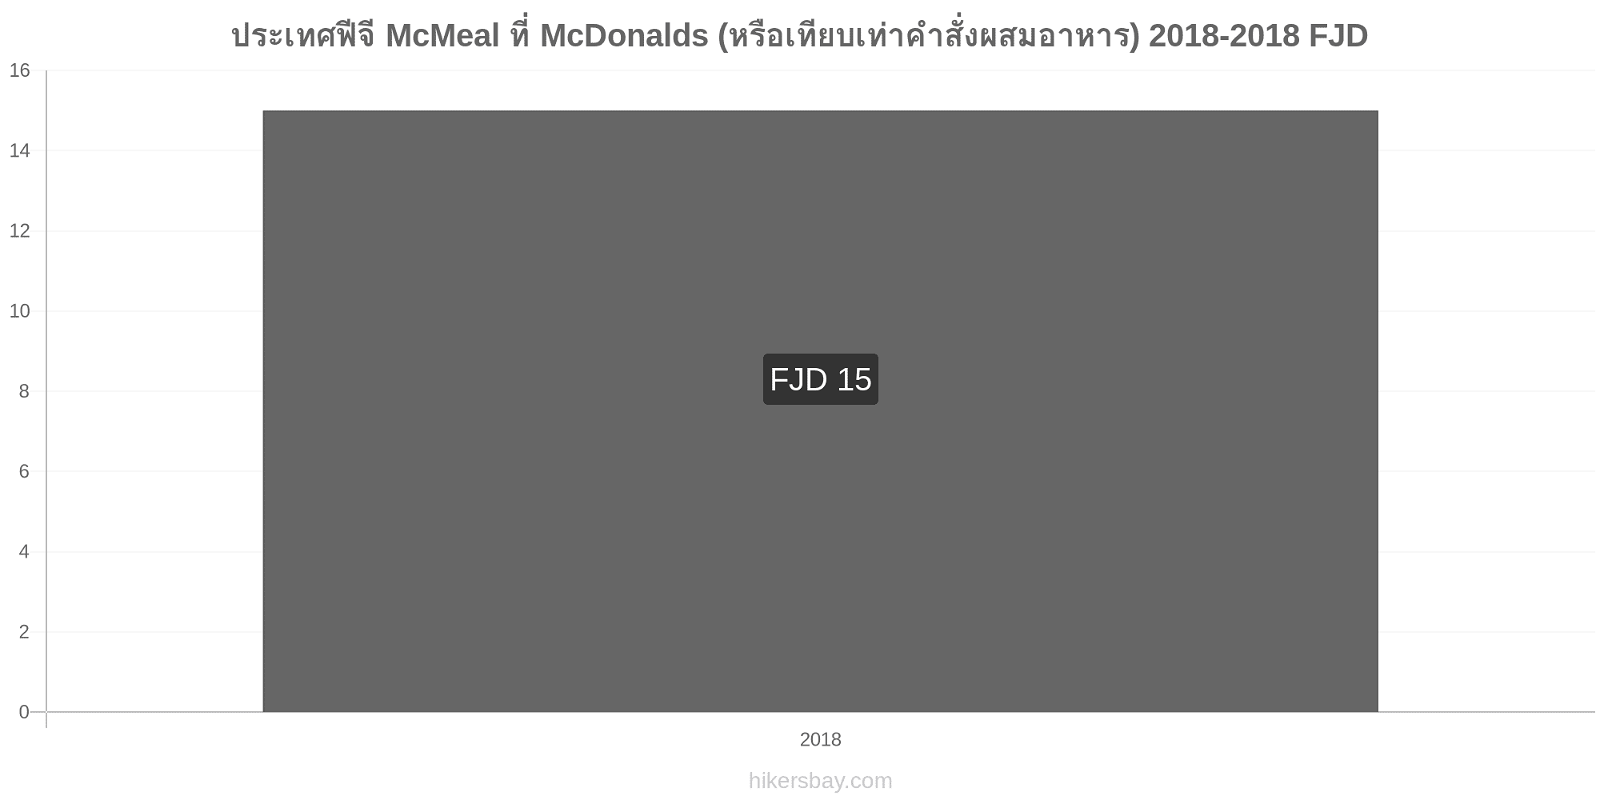 ประเทศฟีจี การเปลี่ยนแปลงราคา McMeal ที่ McDonalds (หรือเทียบเท่าคำสั่งผสมอาหาร) hikersbay.com